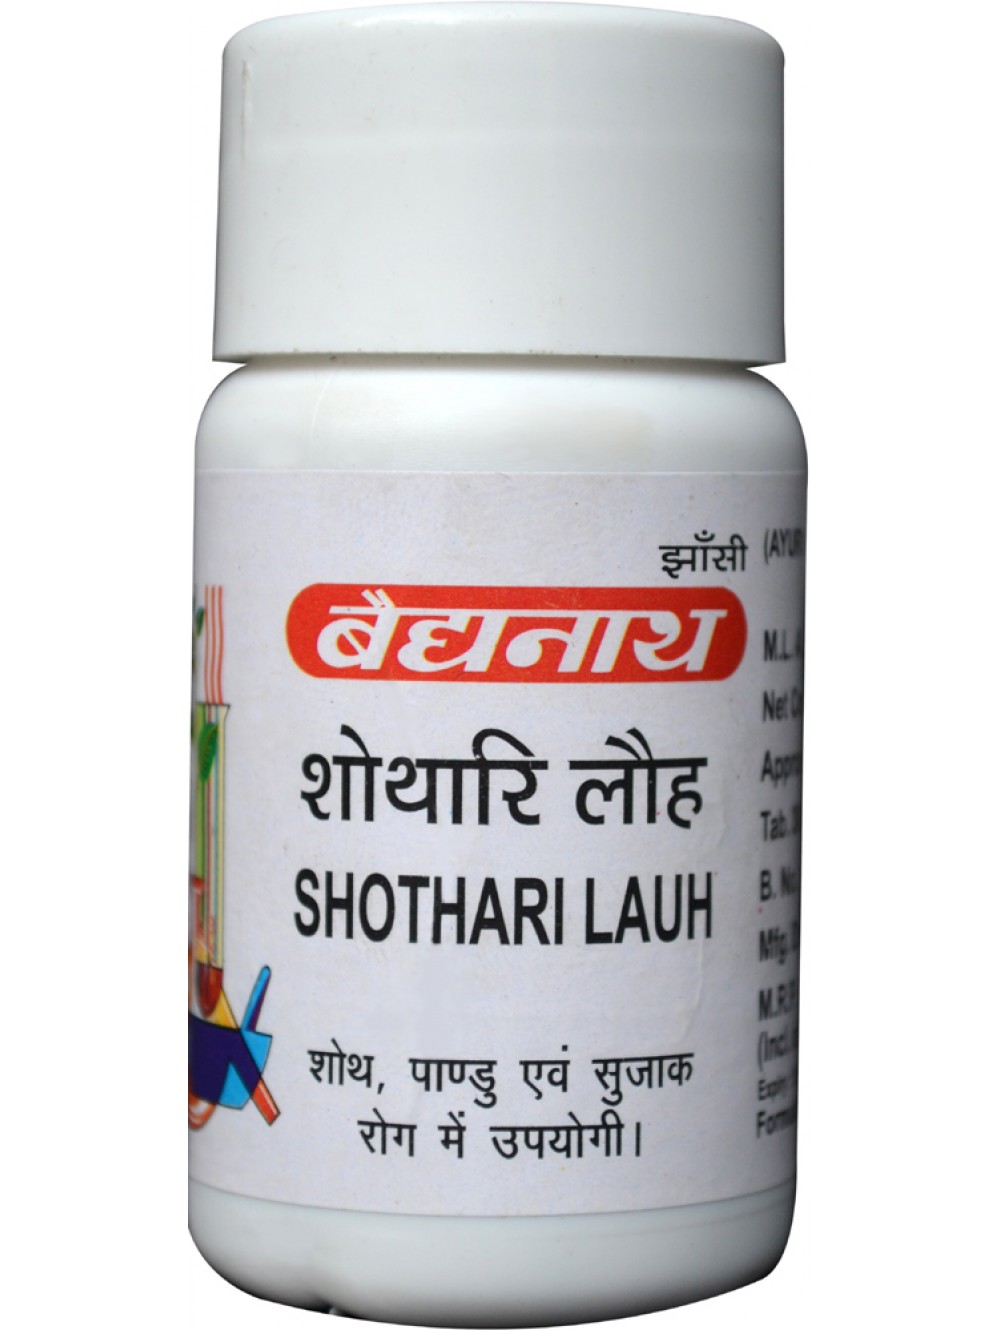 Buy Baidyanath Shothari Loha at Best Price Online